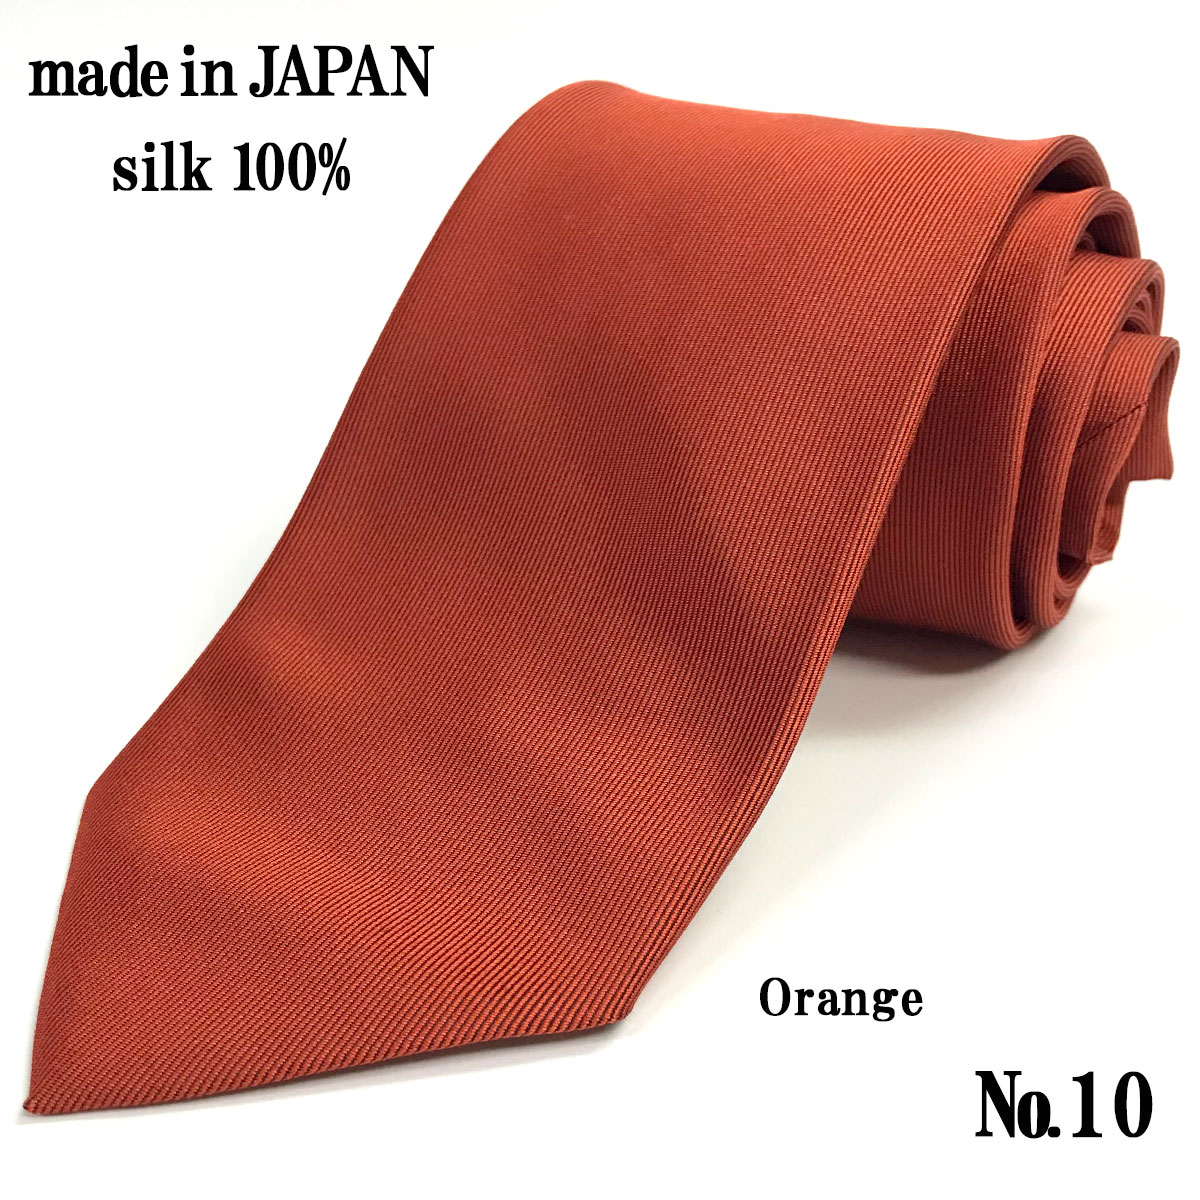 ネクタイ 日本製 シルク100% おしゃれ 無地 繻子織 綾織 メンズ